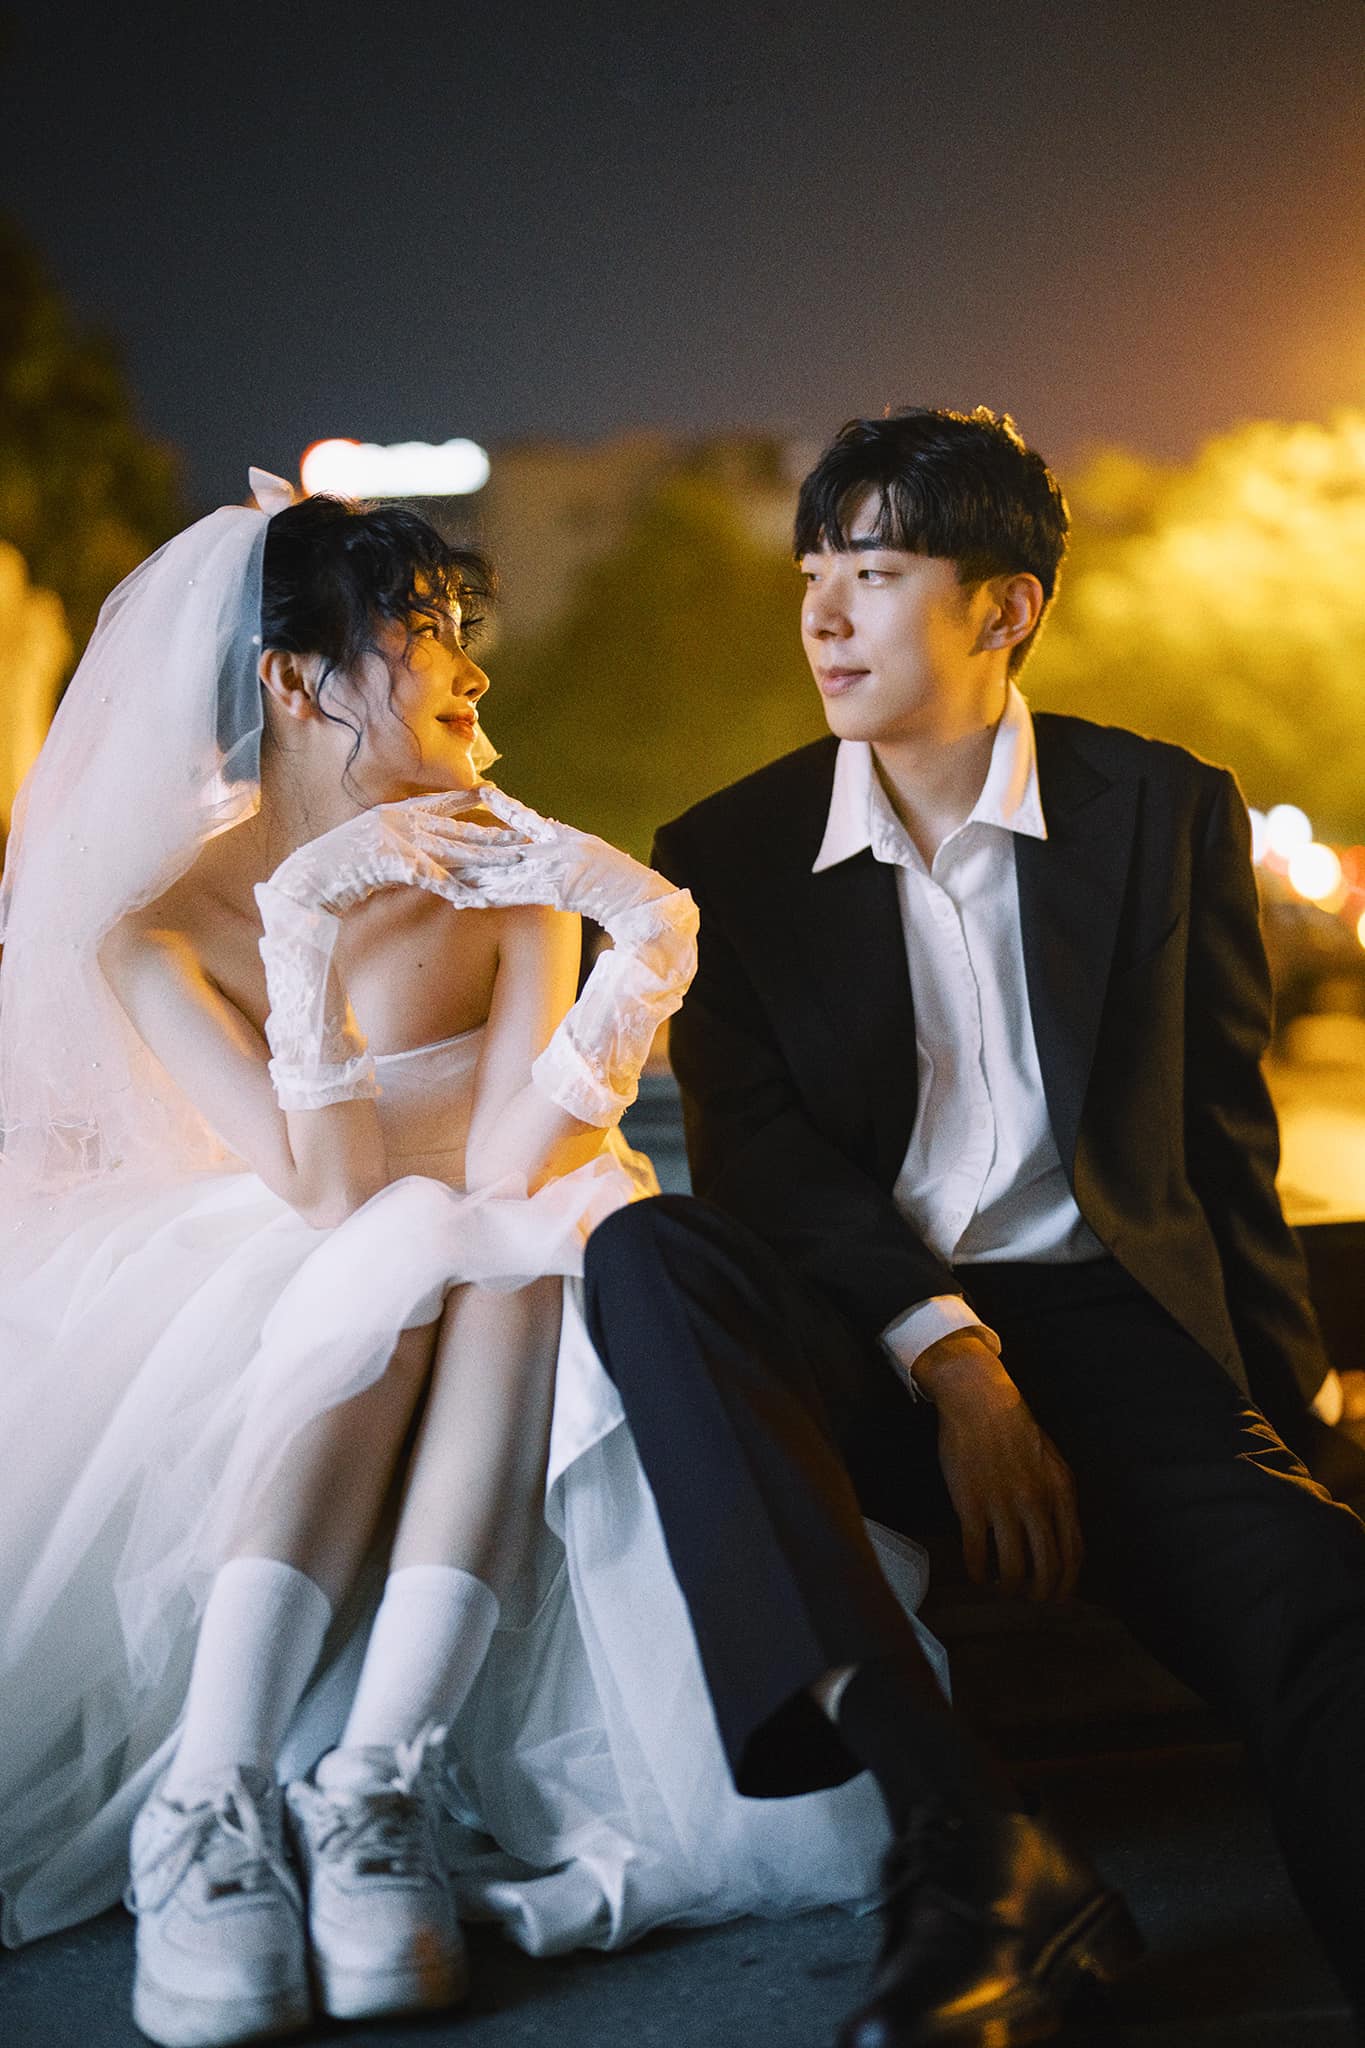 Chàng rể người Hàn Quốc cưới Tiktoker Hải Phòng, đến ngày rước dâu vẫn thắc mắc một câu khiến mẹ vợ phải giải thích - ảnh 5